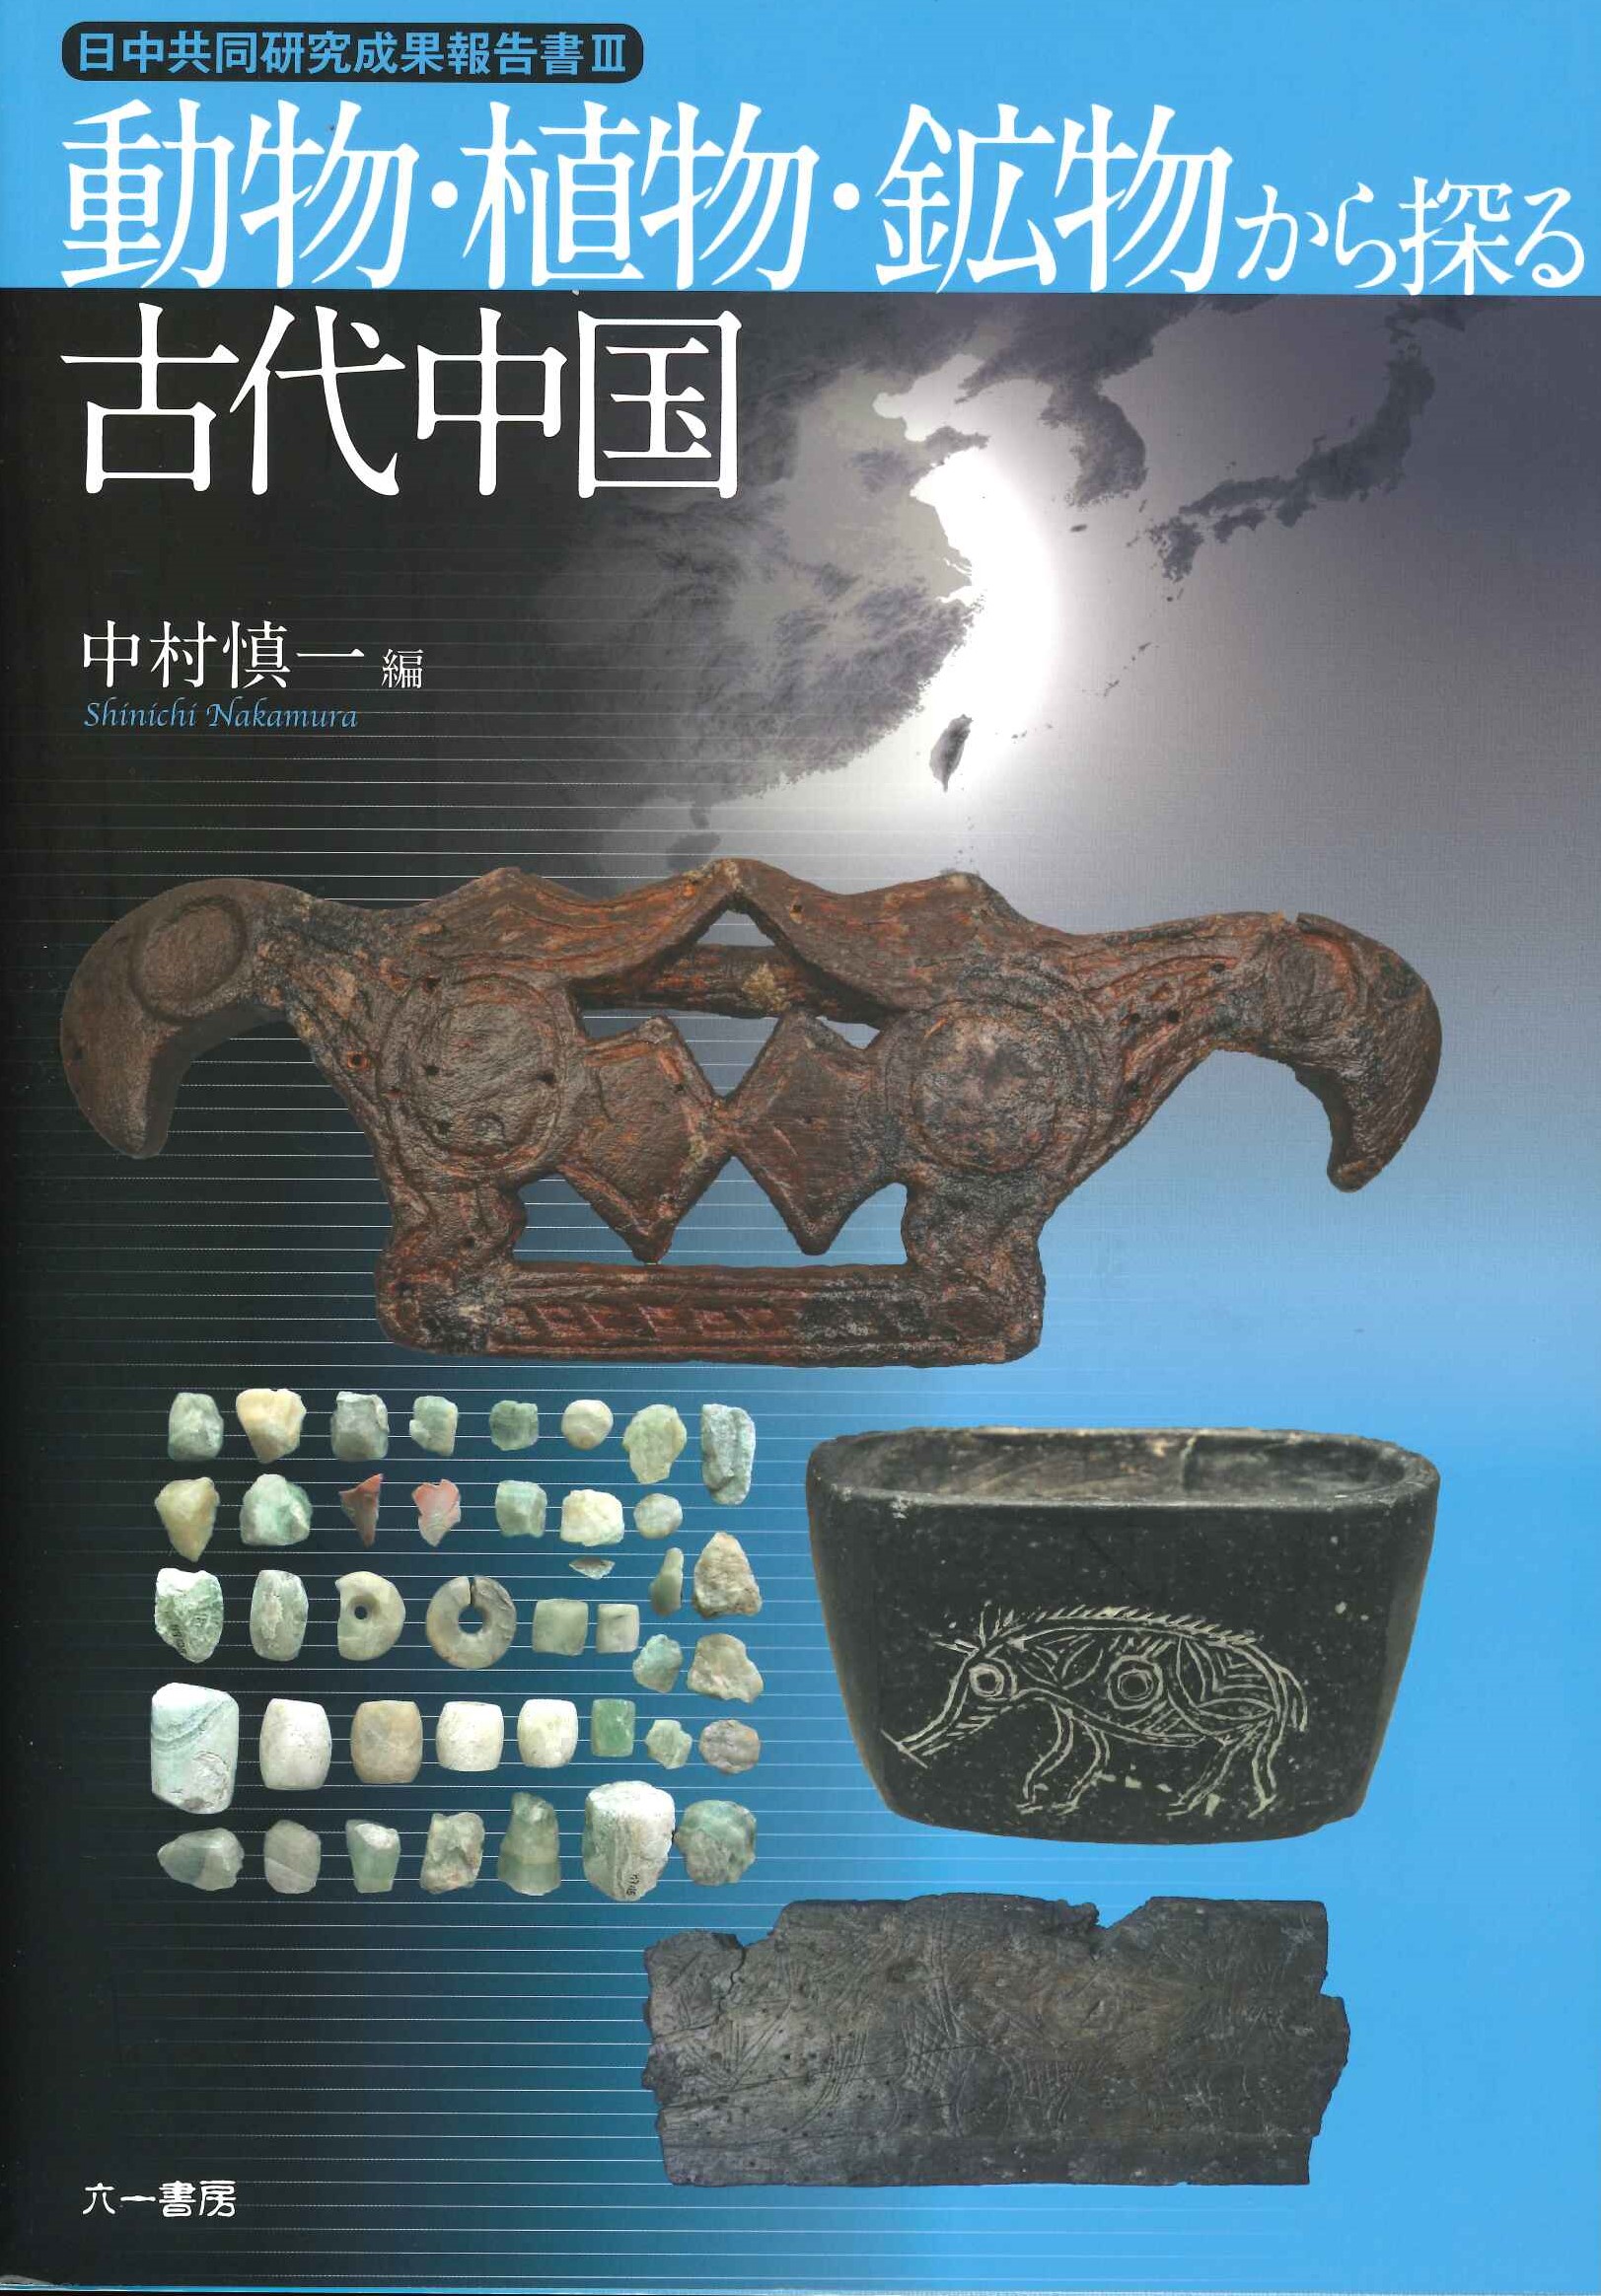 動物・植物・鉱物から探る古代中国(日中共同研究成果報告書)